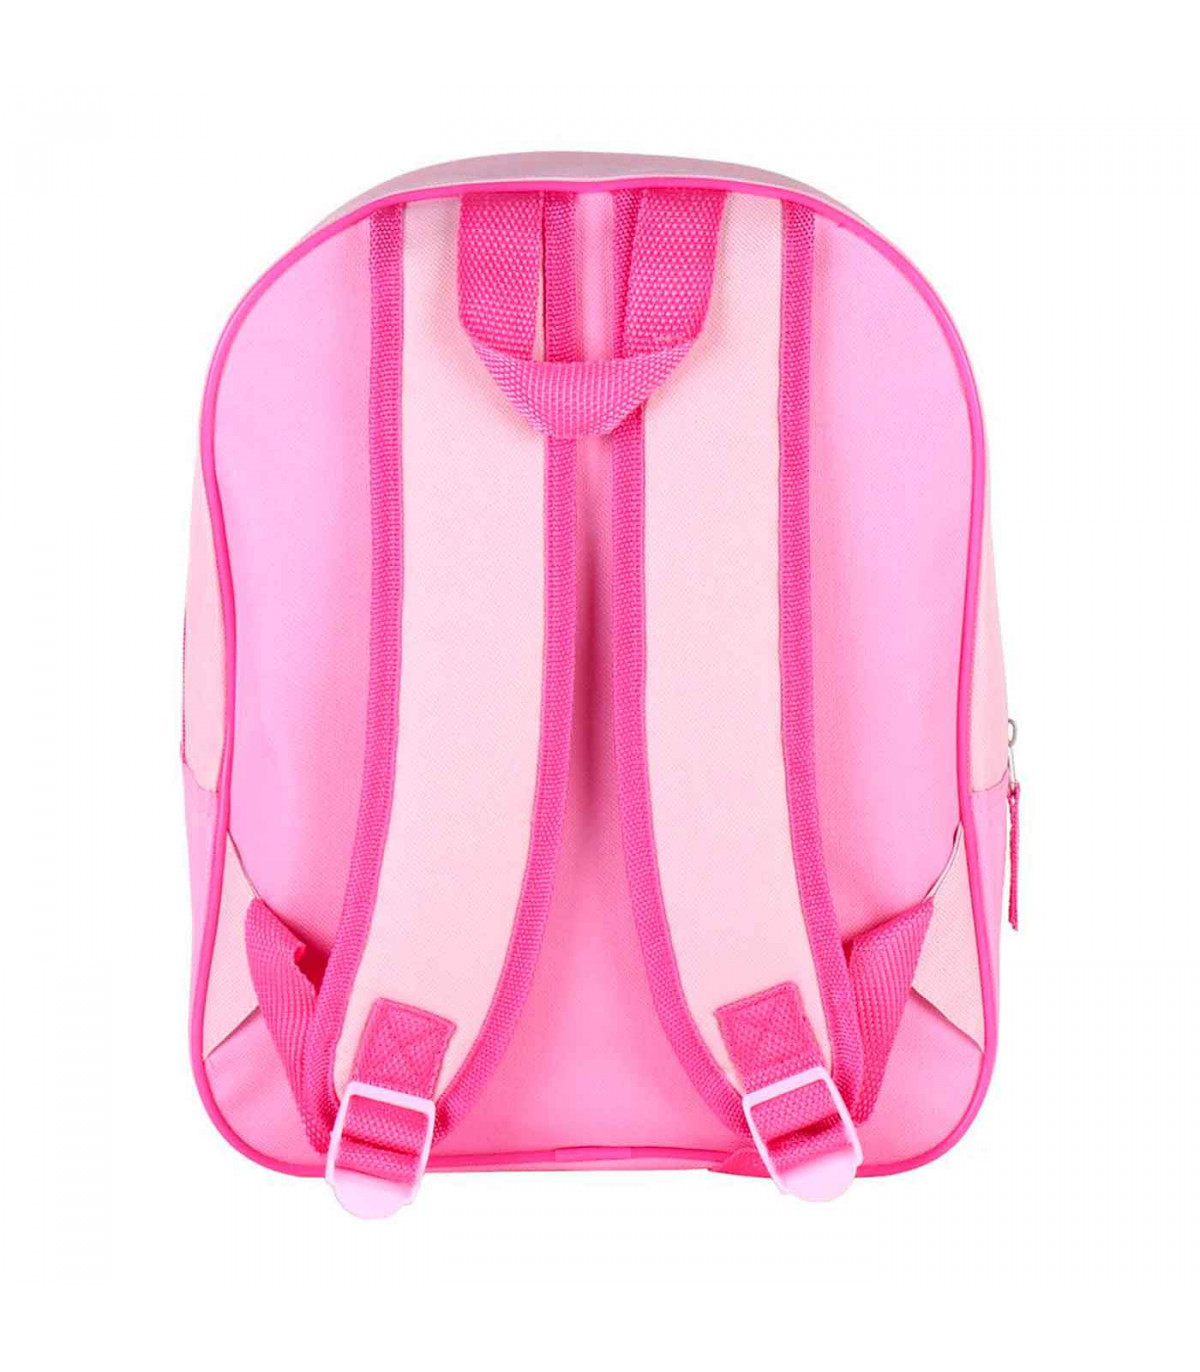 Aclarar práctico Todo el tiempo Tradineur - Mochila 3D rosa para niños con diseño de Minnie Mouse, ideal  para la escuela. Medidas de 25 x 31 x 10 cm para colgar